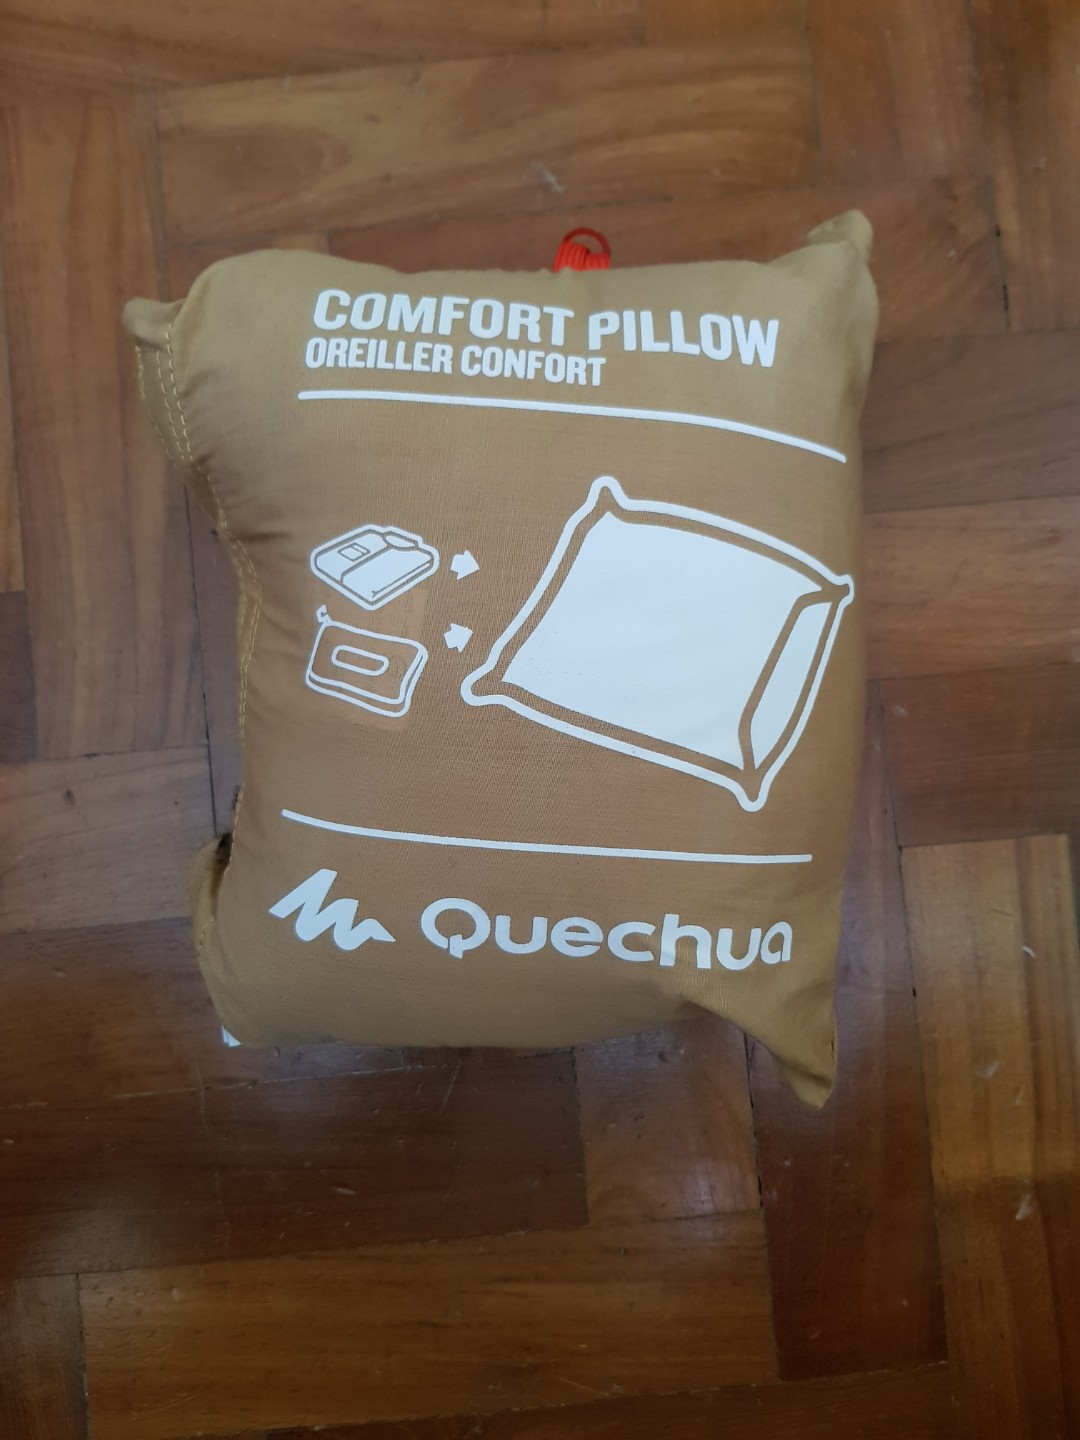 Quechua Comfort Pillow from Decathlon 